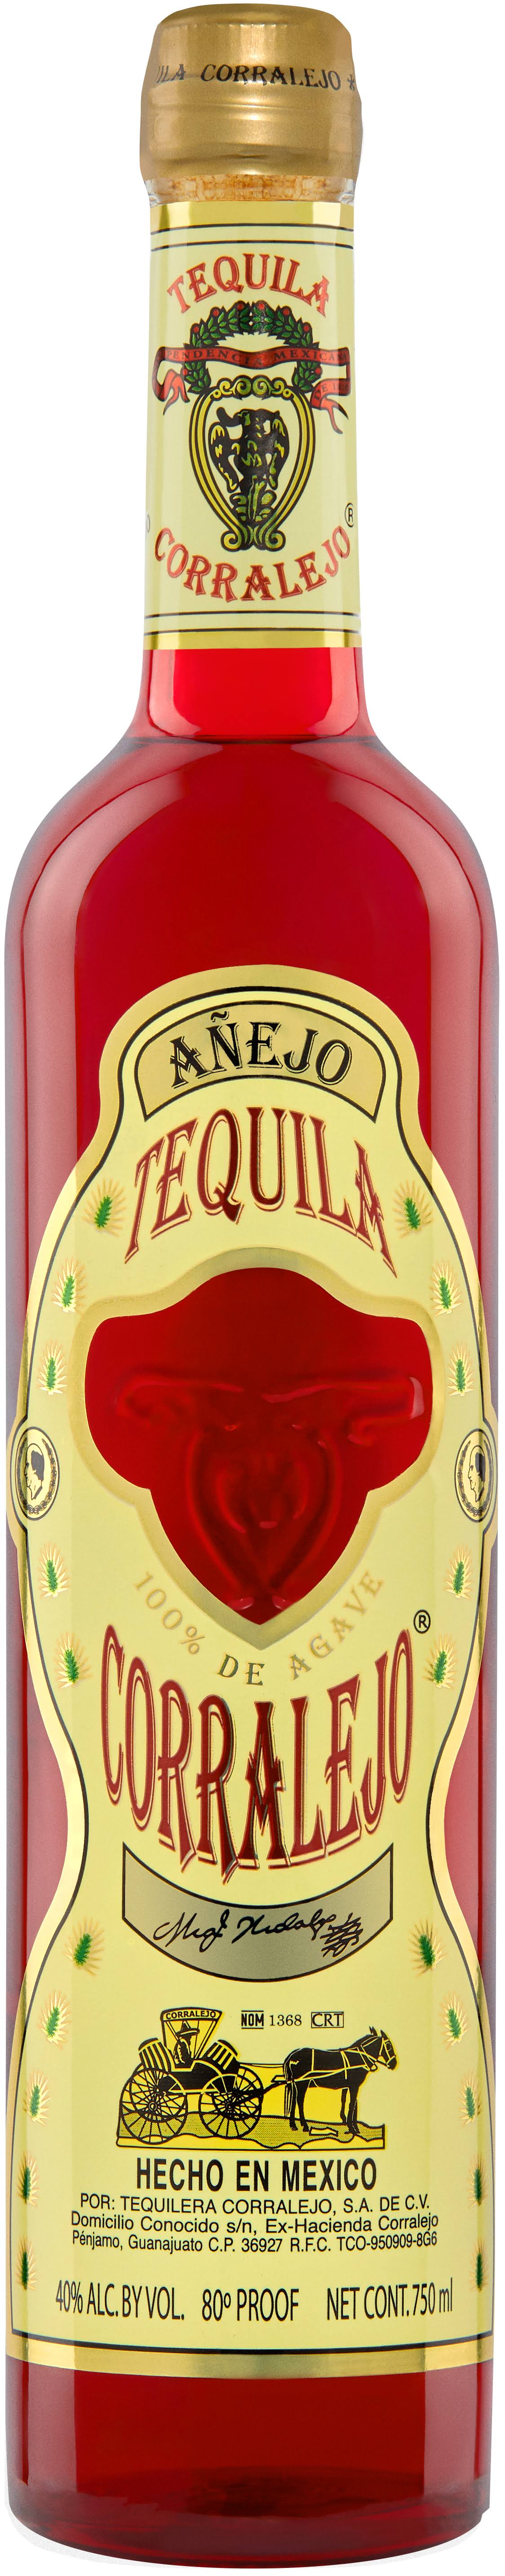 Corralejo Anejo Tequila - 750 ml bottle